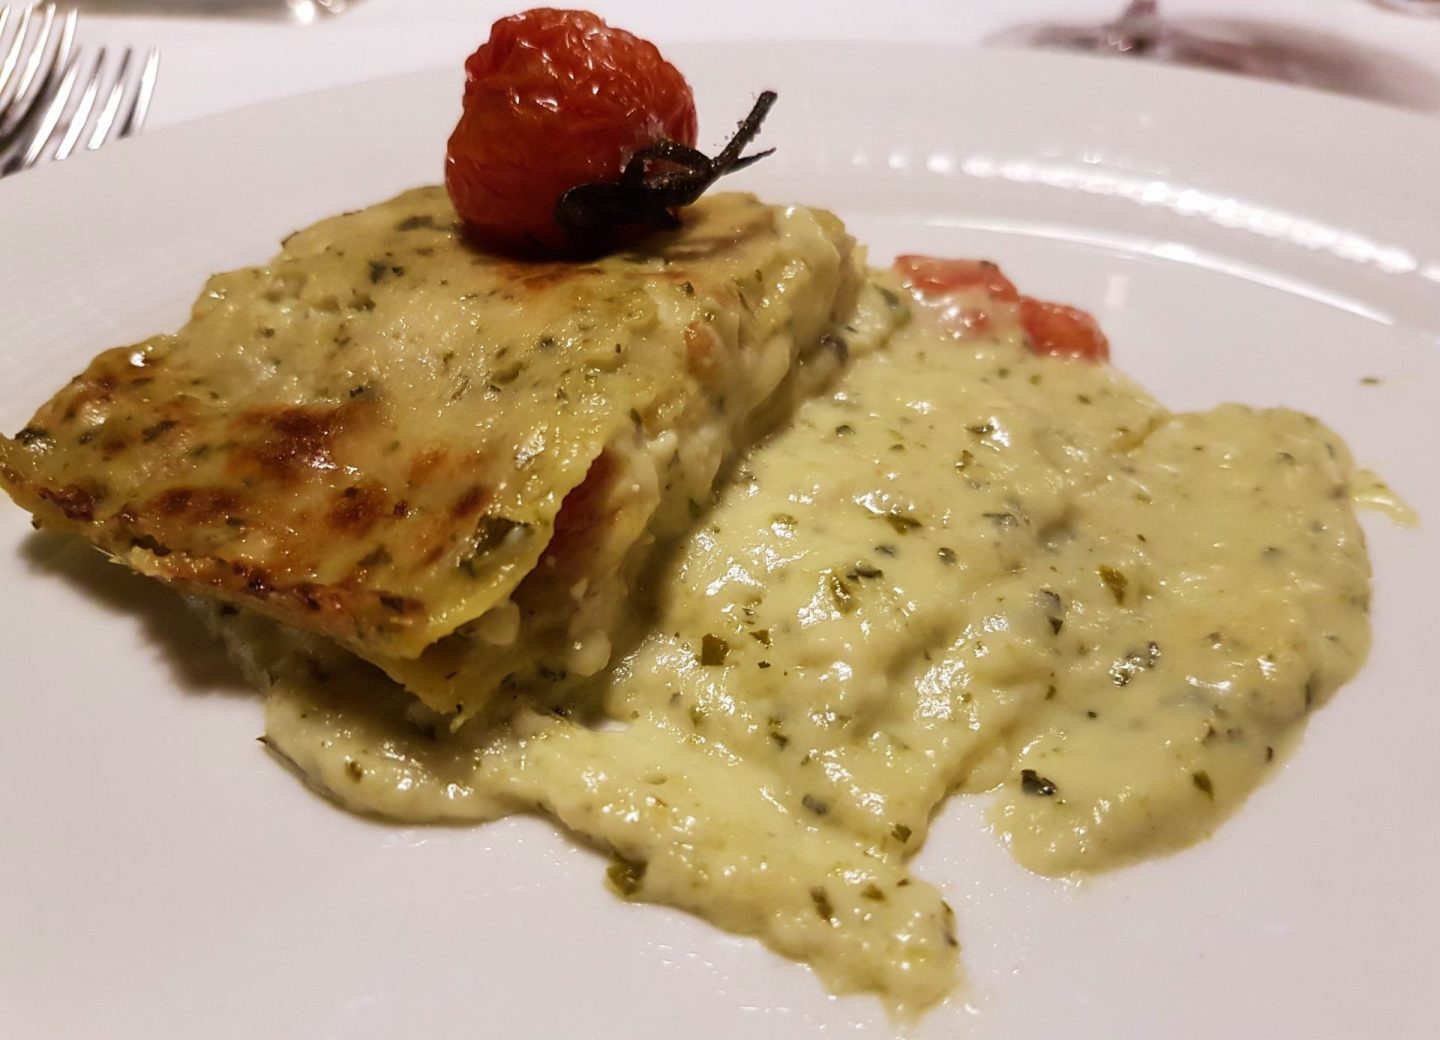 Erfahrung Bewertung Kritik Hotel Kristiania Wolkenstein Lasagne Pesto Tomate Foodblog Sternestulle